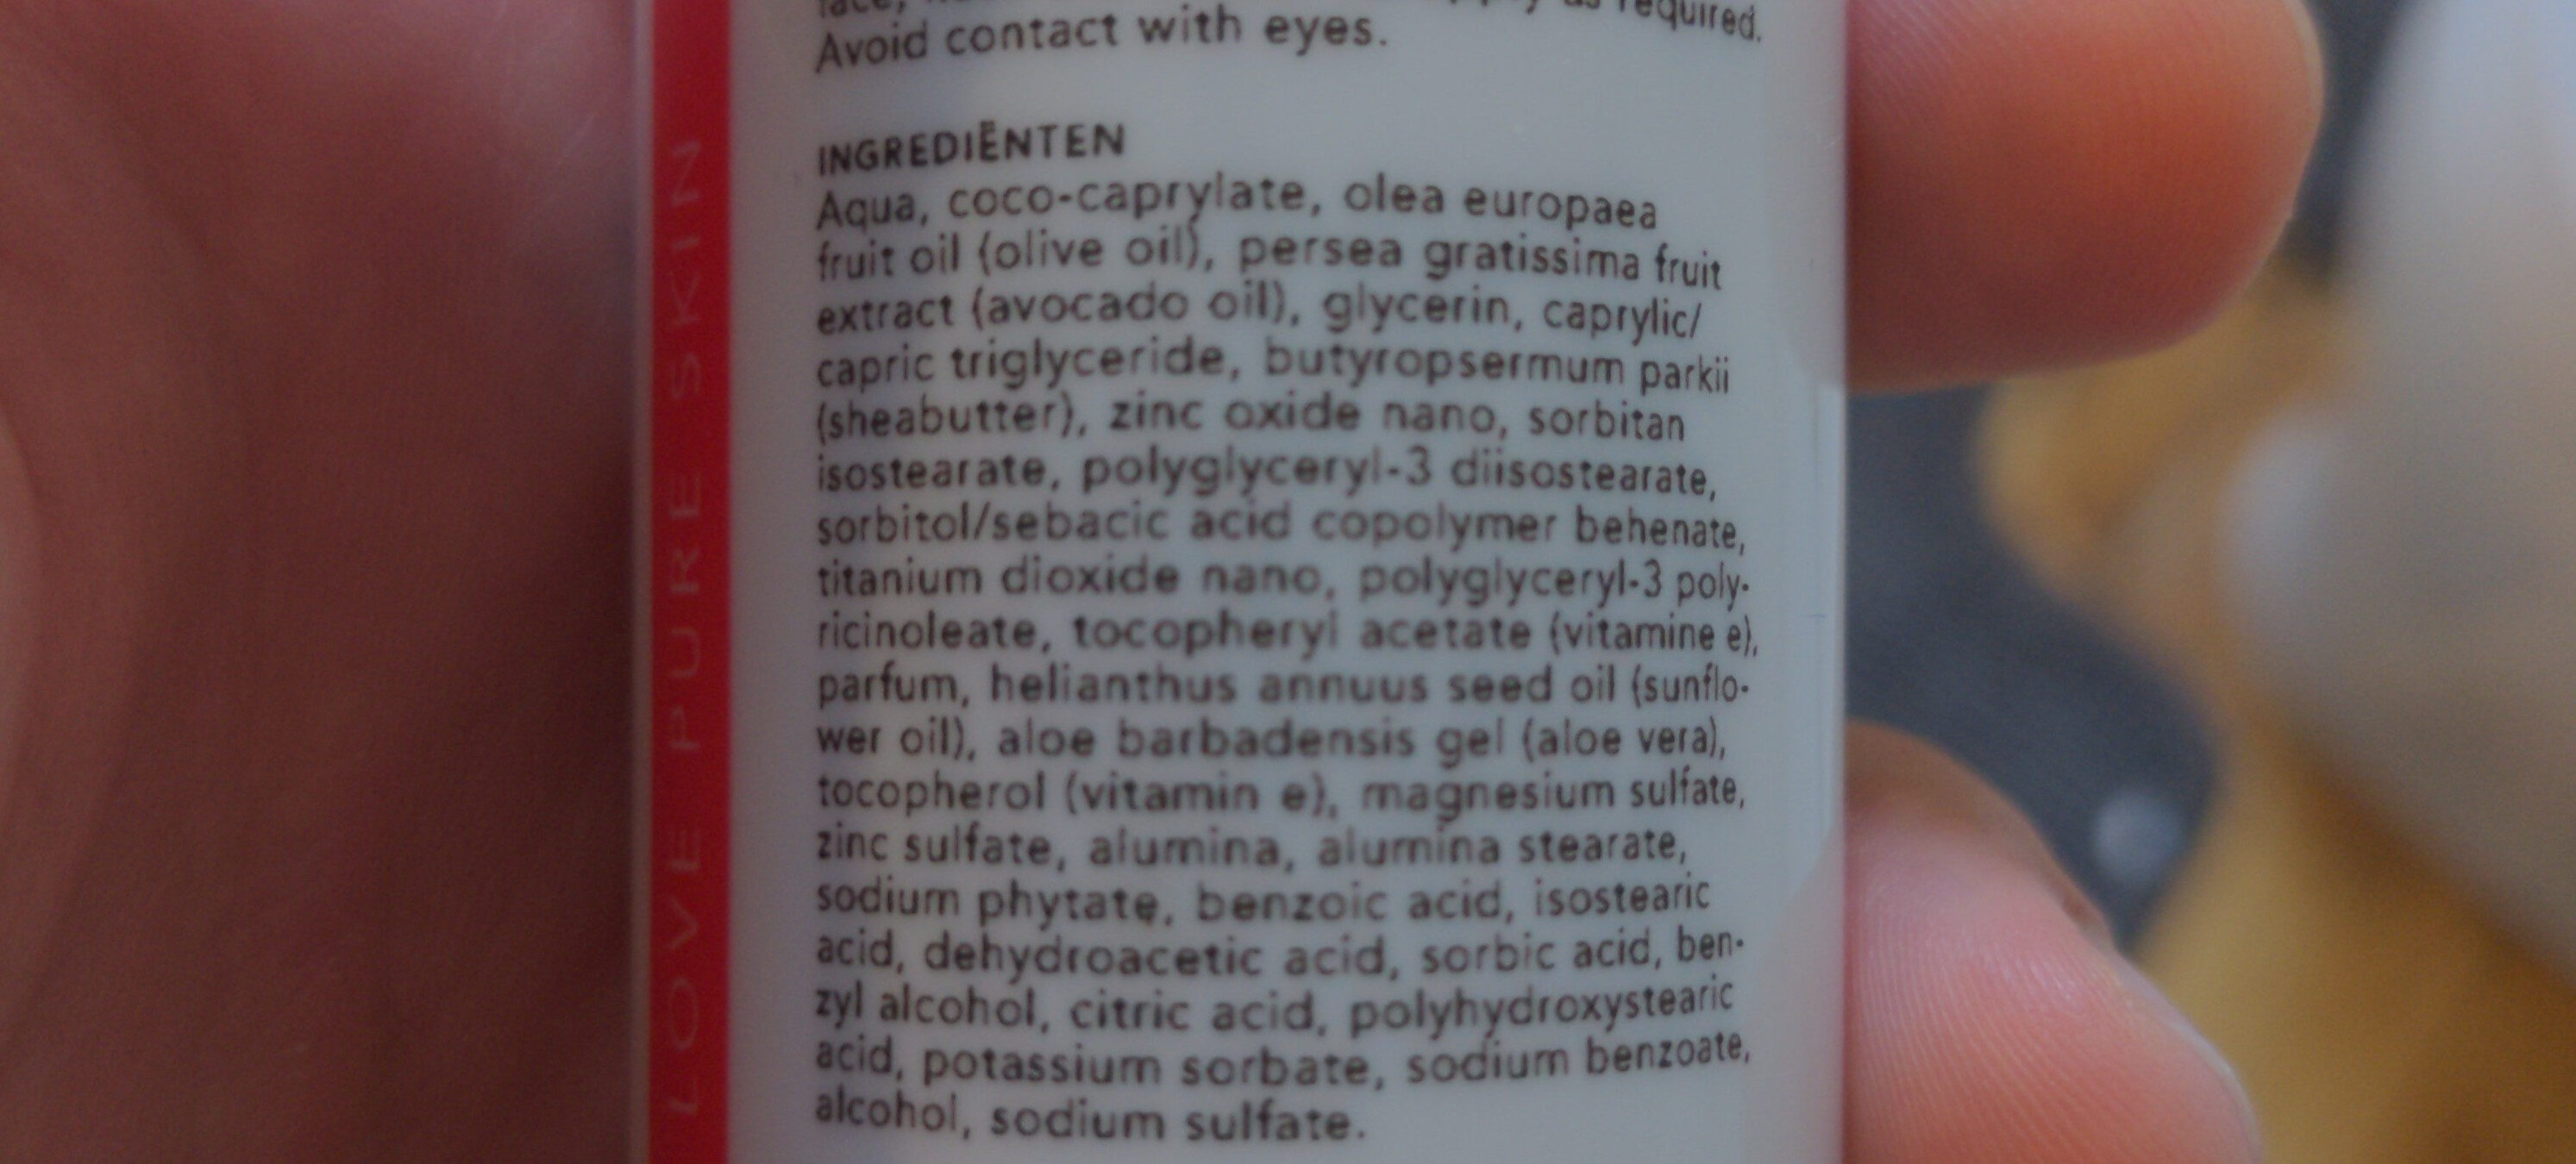 face cream - Ingredients - nl